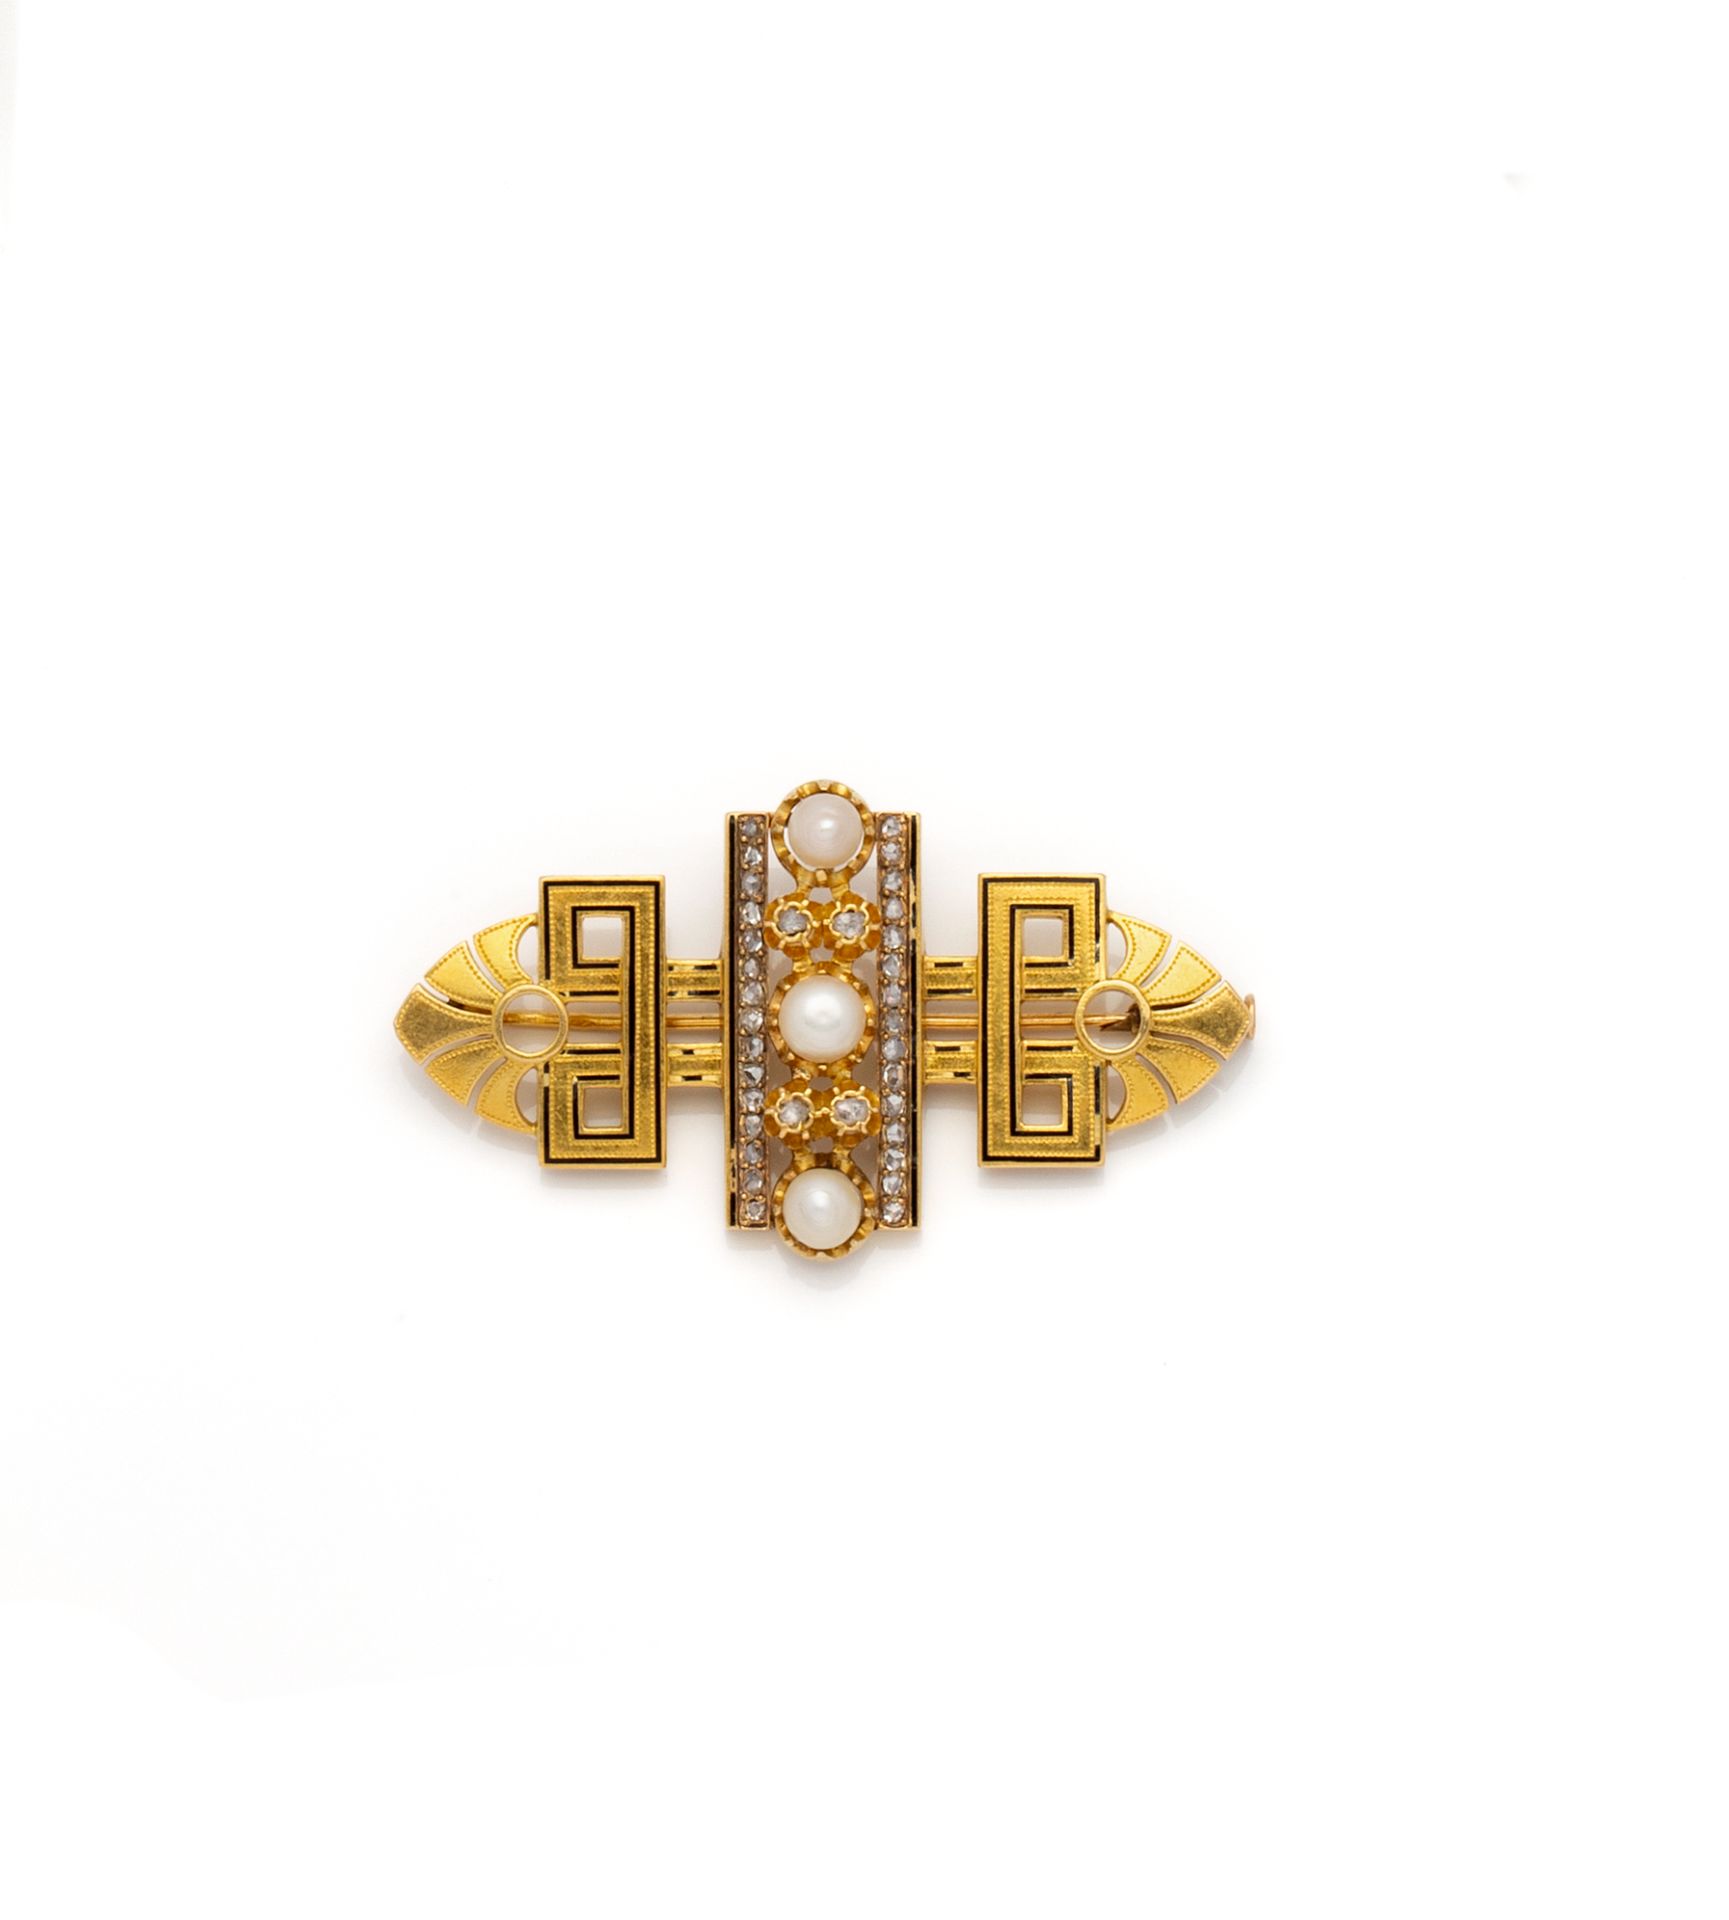 Null 18K（750/1000）黄金胸针，中心有3颗珍珠排成一排，两行玫瑰式切割钻石，两侧装饰有希腊图案，最后是一个镂空的棕榈花。

长度：62毫米 - 总&hellip;